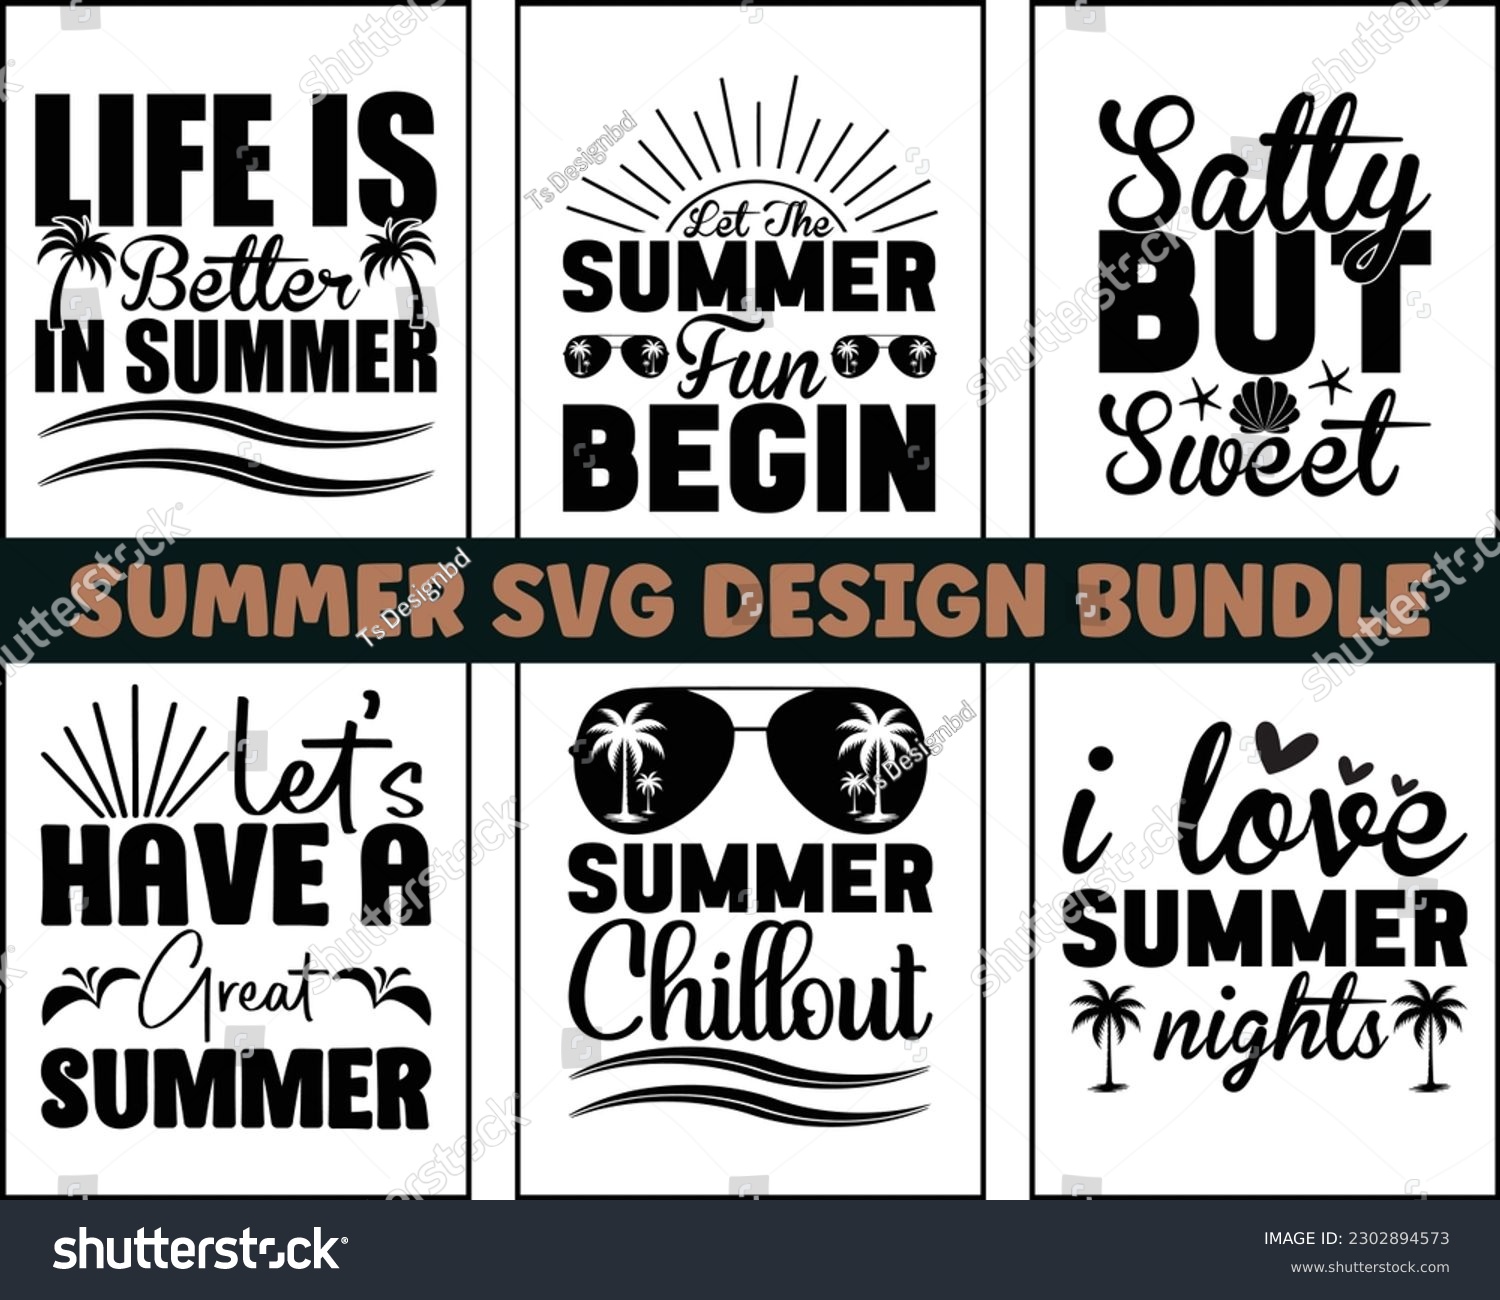 SVG of summer SVG design bundle,Summer Quotes SVG Designs Bundle,Summer Design for Shirts,Hello Summer quotes t shirt designs bundle, Summer Beach Bundle SVG,Quotes about Summer svg